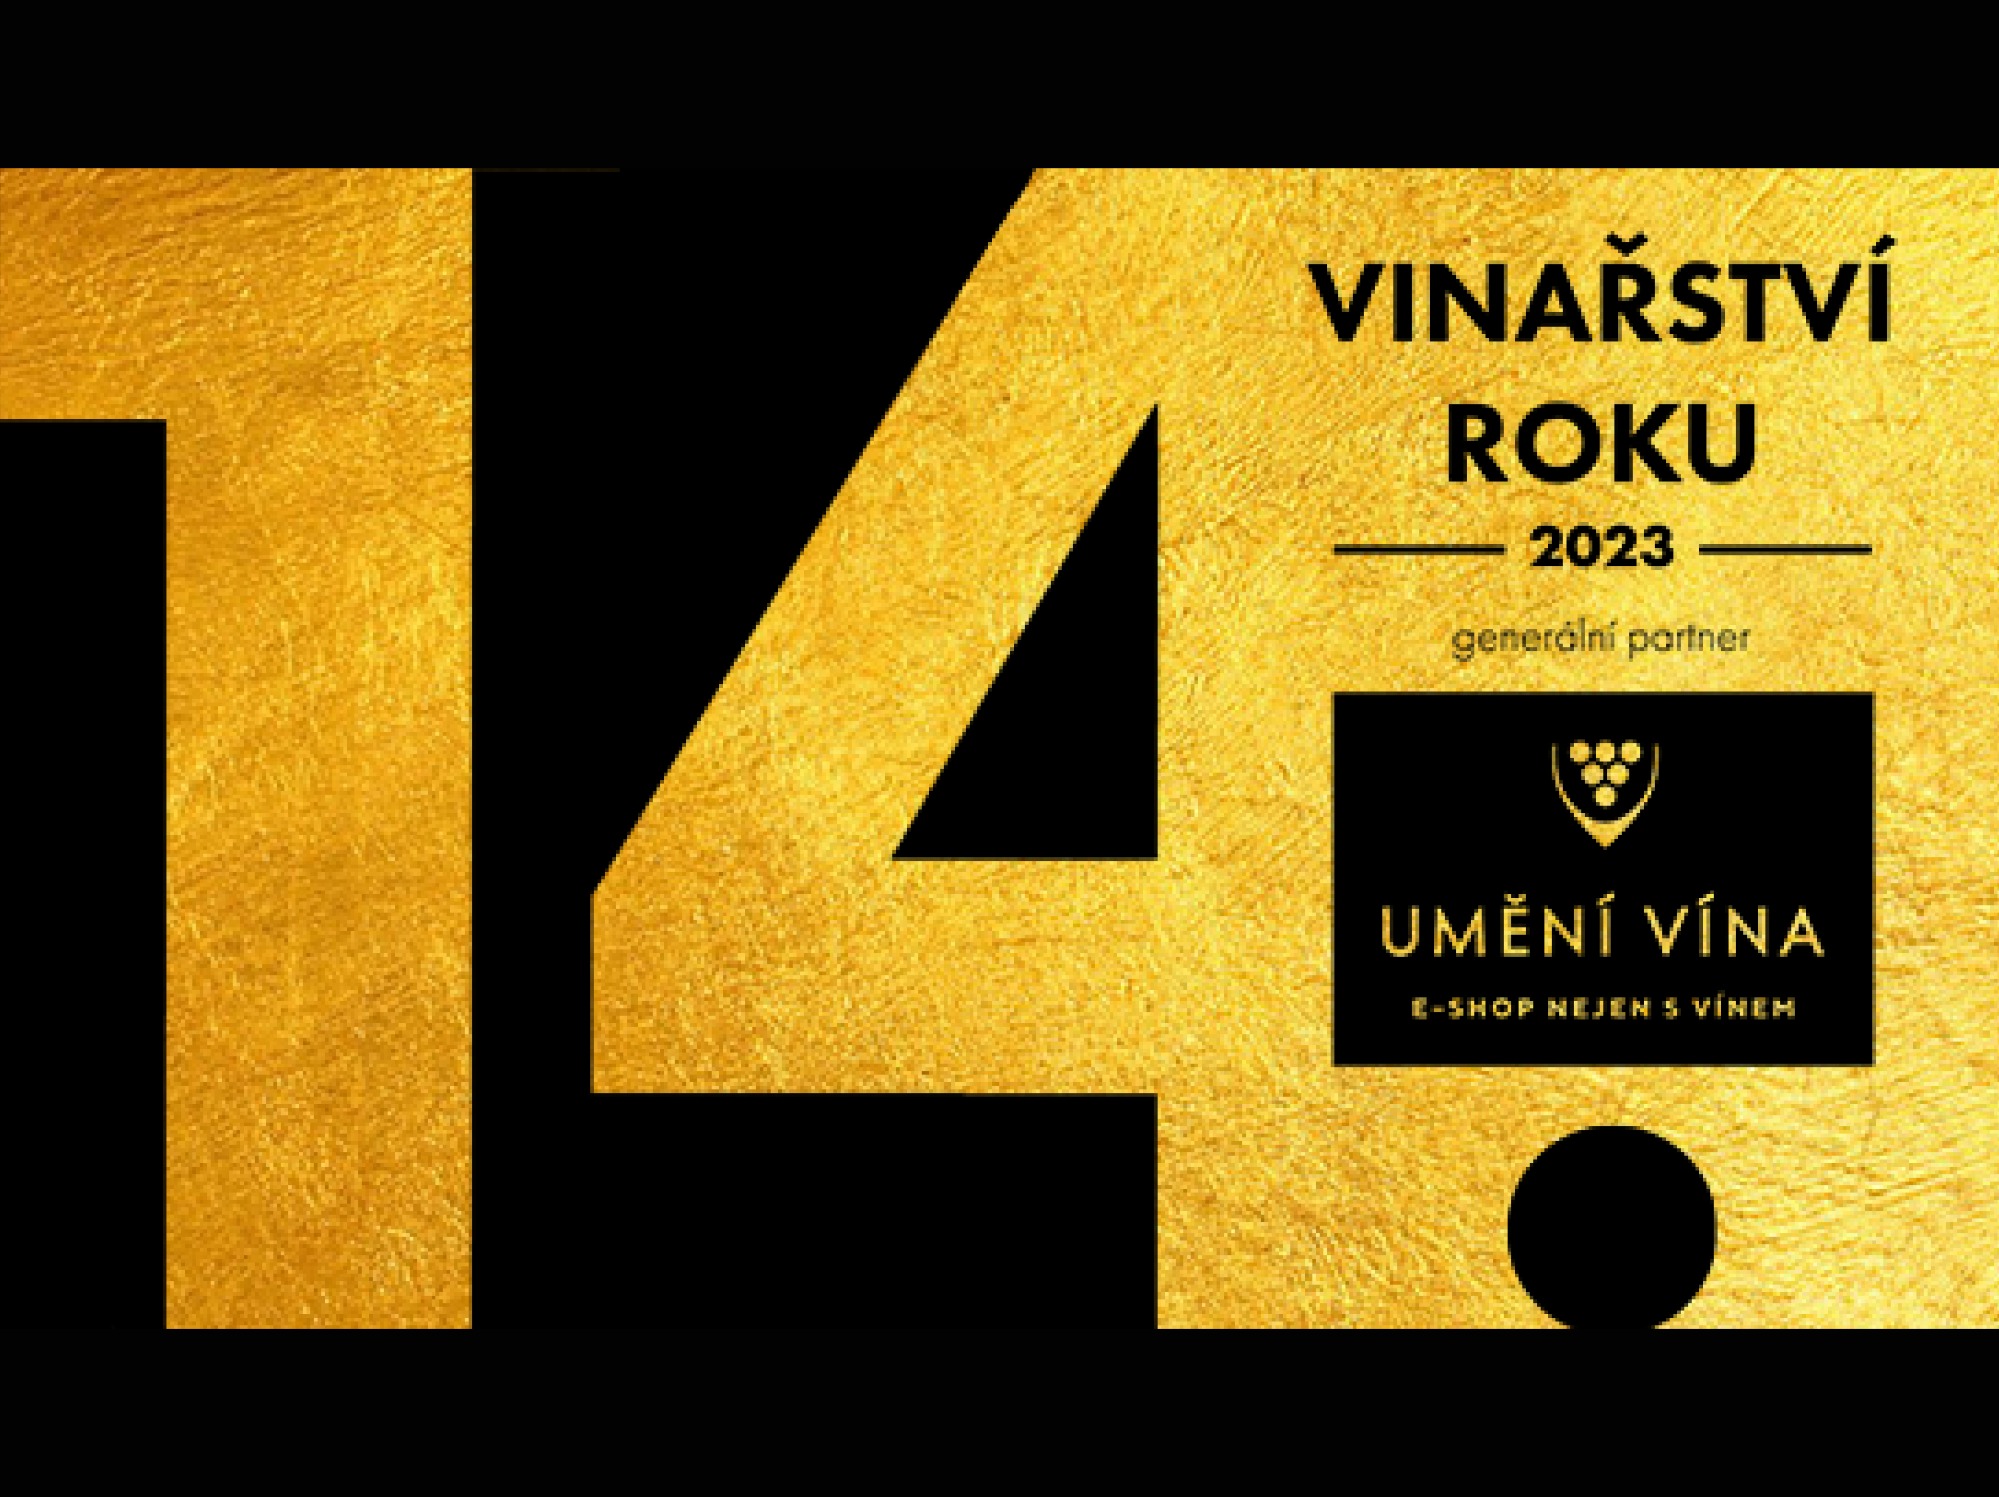 Vítěz Vinařství roku 2023 a Umění vína vzejde opět z 25 nominovaných vinařství